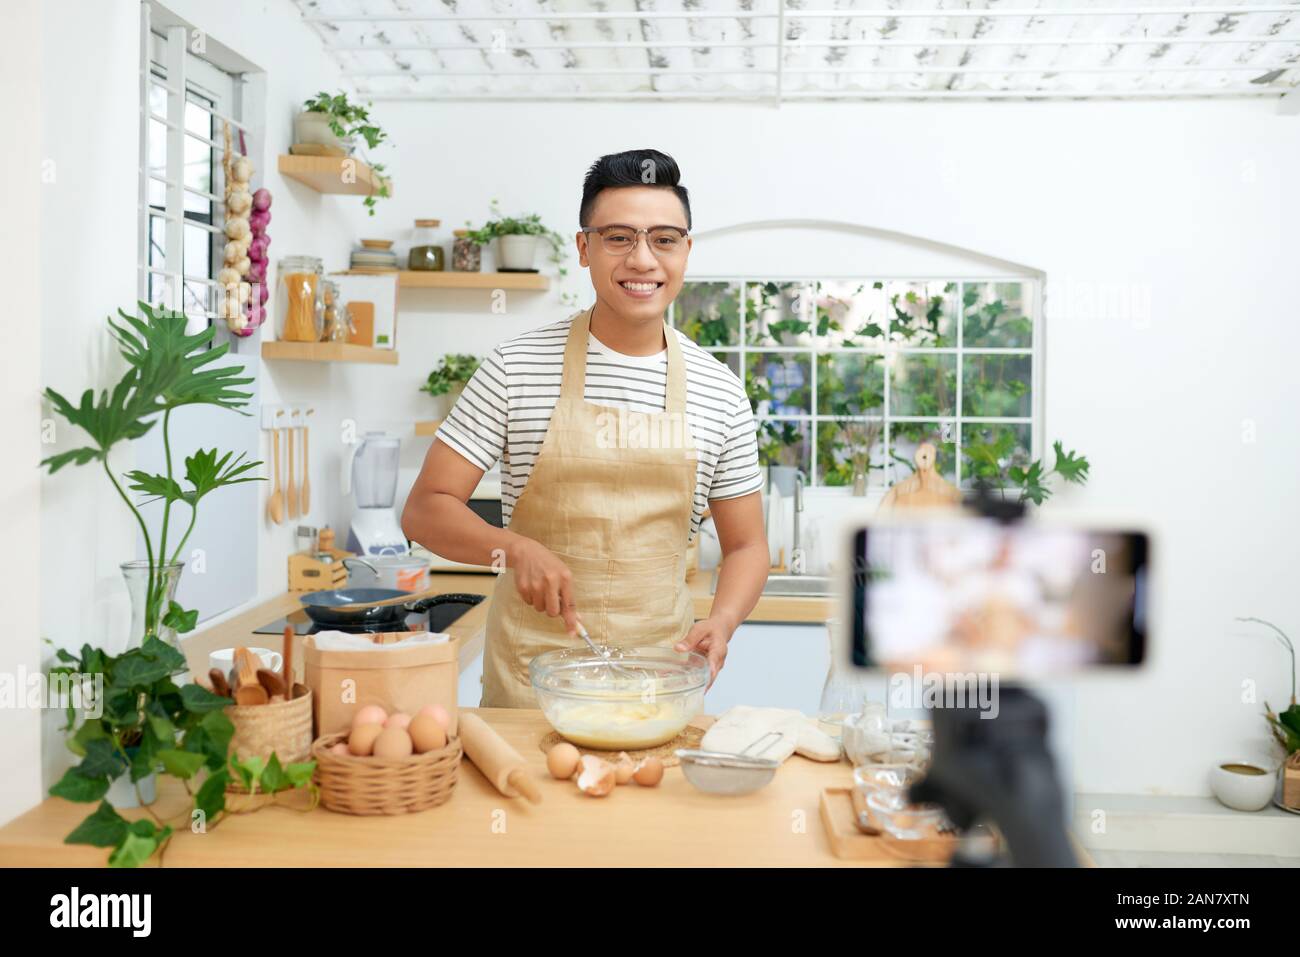 Baker Online-Kurse, Essen vorbereiten und kulinarische Ausbildung Klasse Konzept Stockfoto